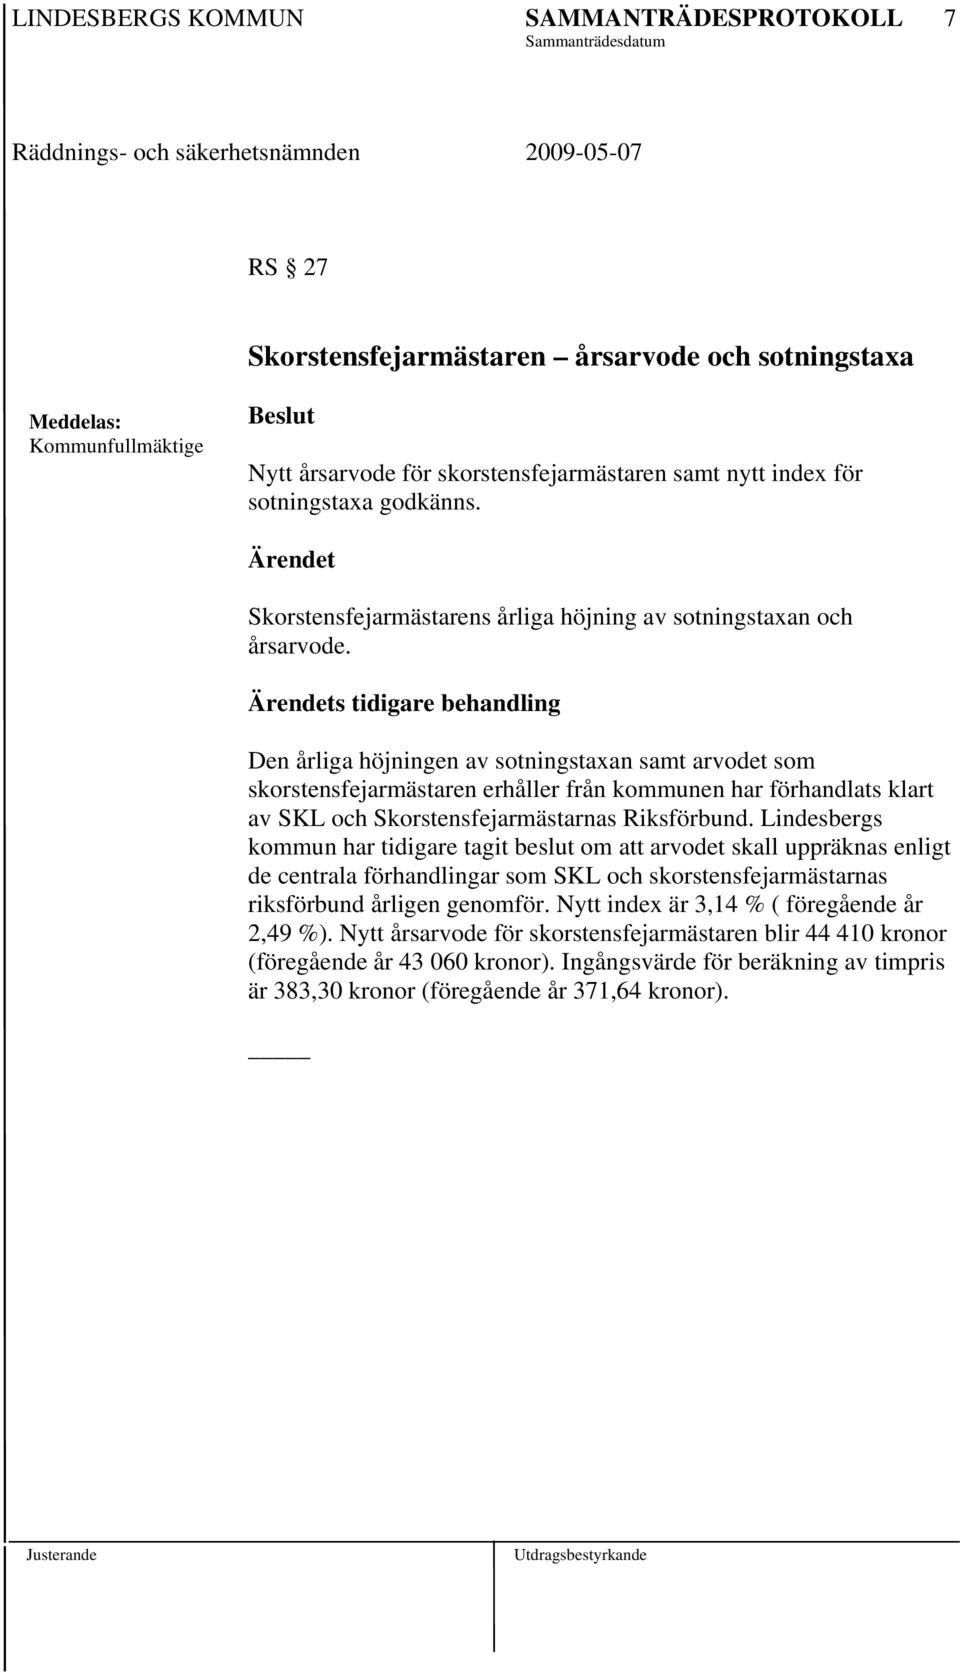 Lindesbergs kommun har tidigare tagit beslut om att arvodet skall uppräknas enligt de centrala förhandlingar som SKL och skorstensfejarmästarnas riksförbund årligen genomför.